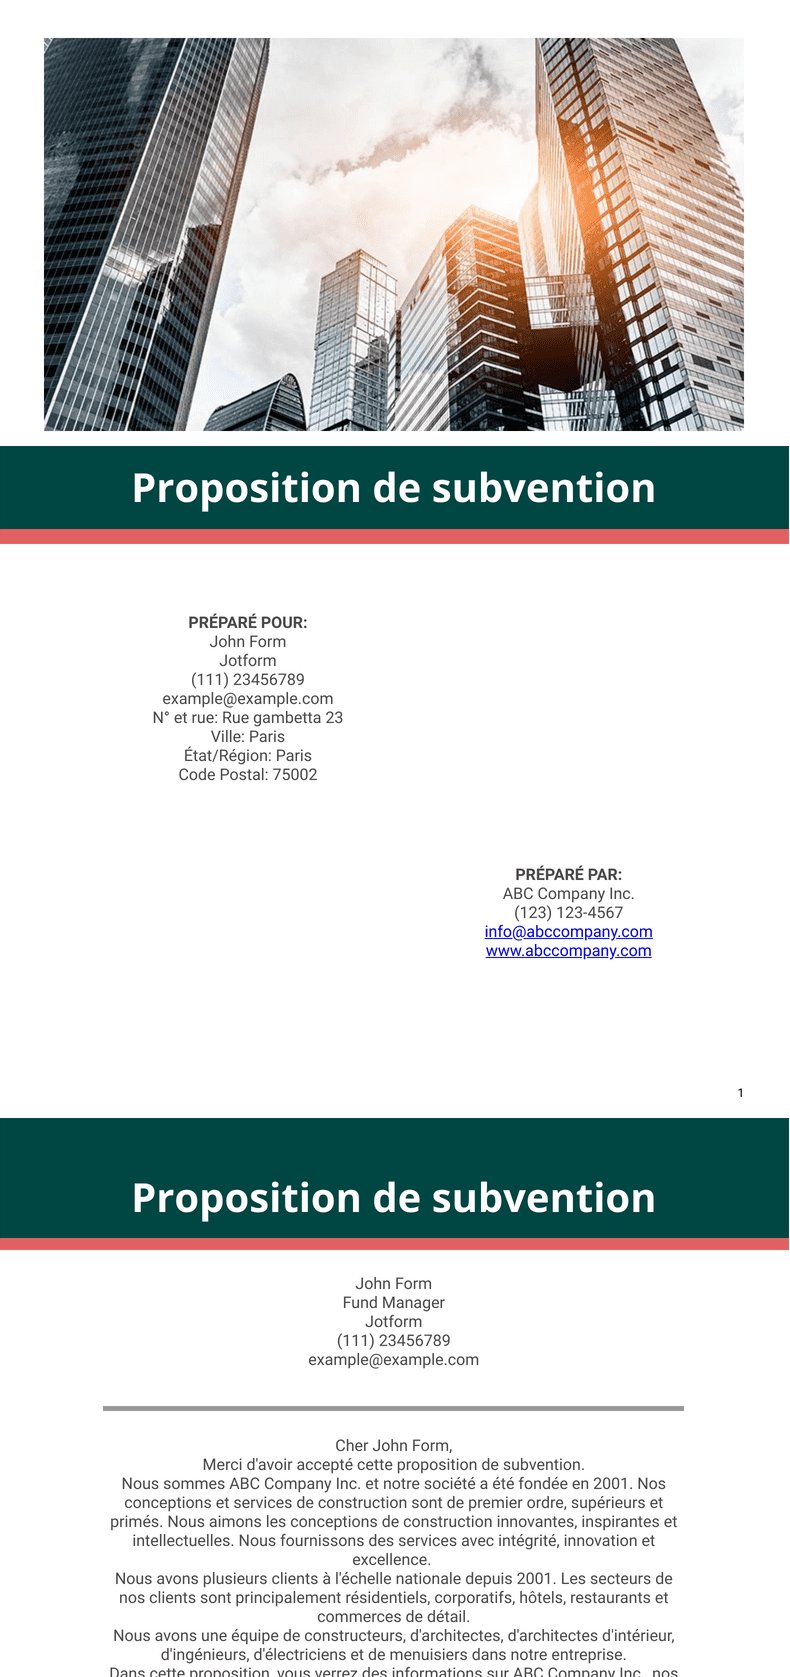 Proposition de subvention